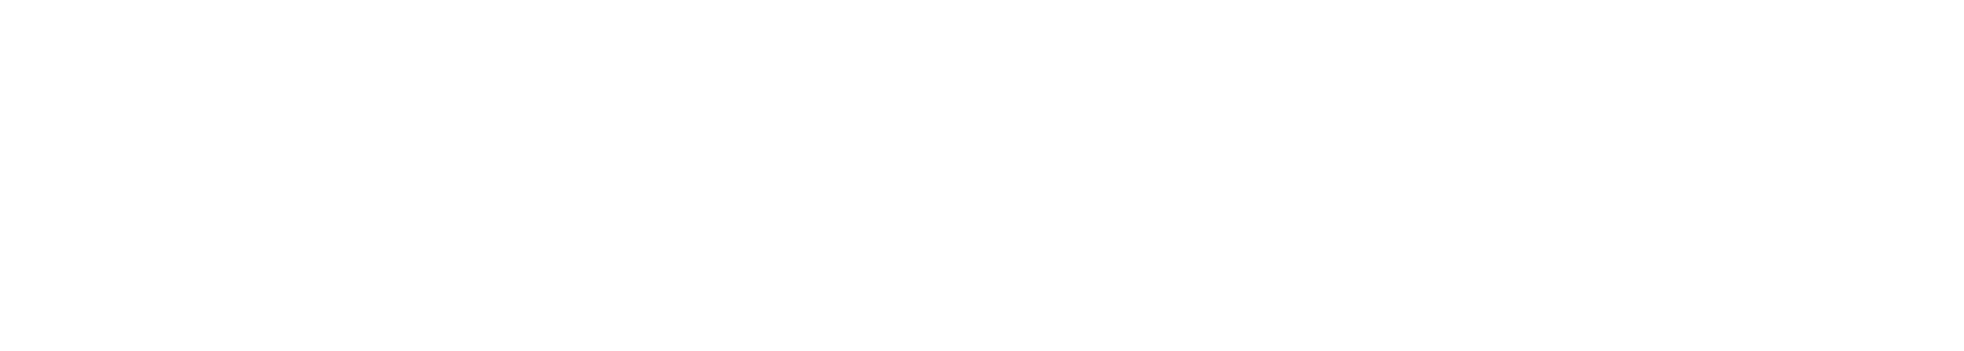 Gan Eden Media Logo Text